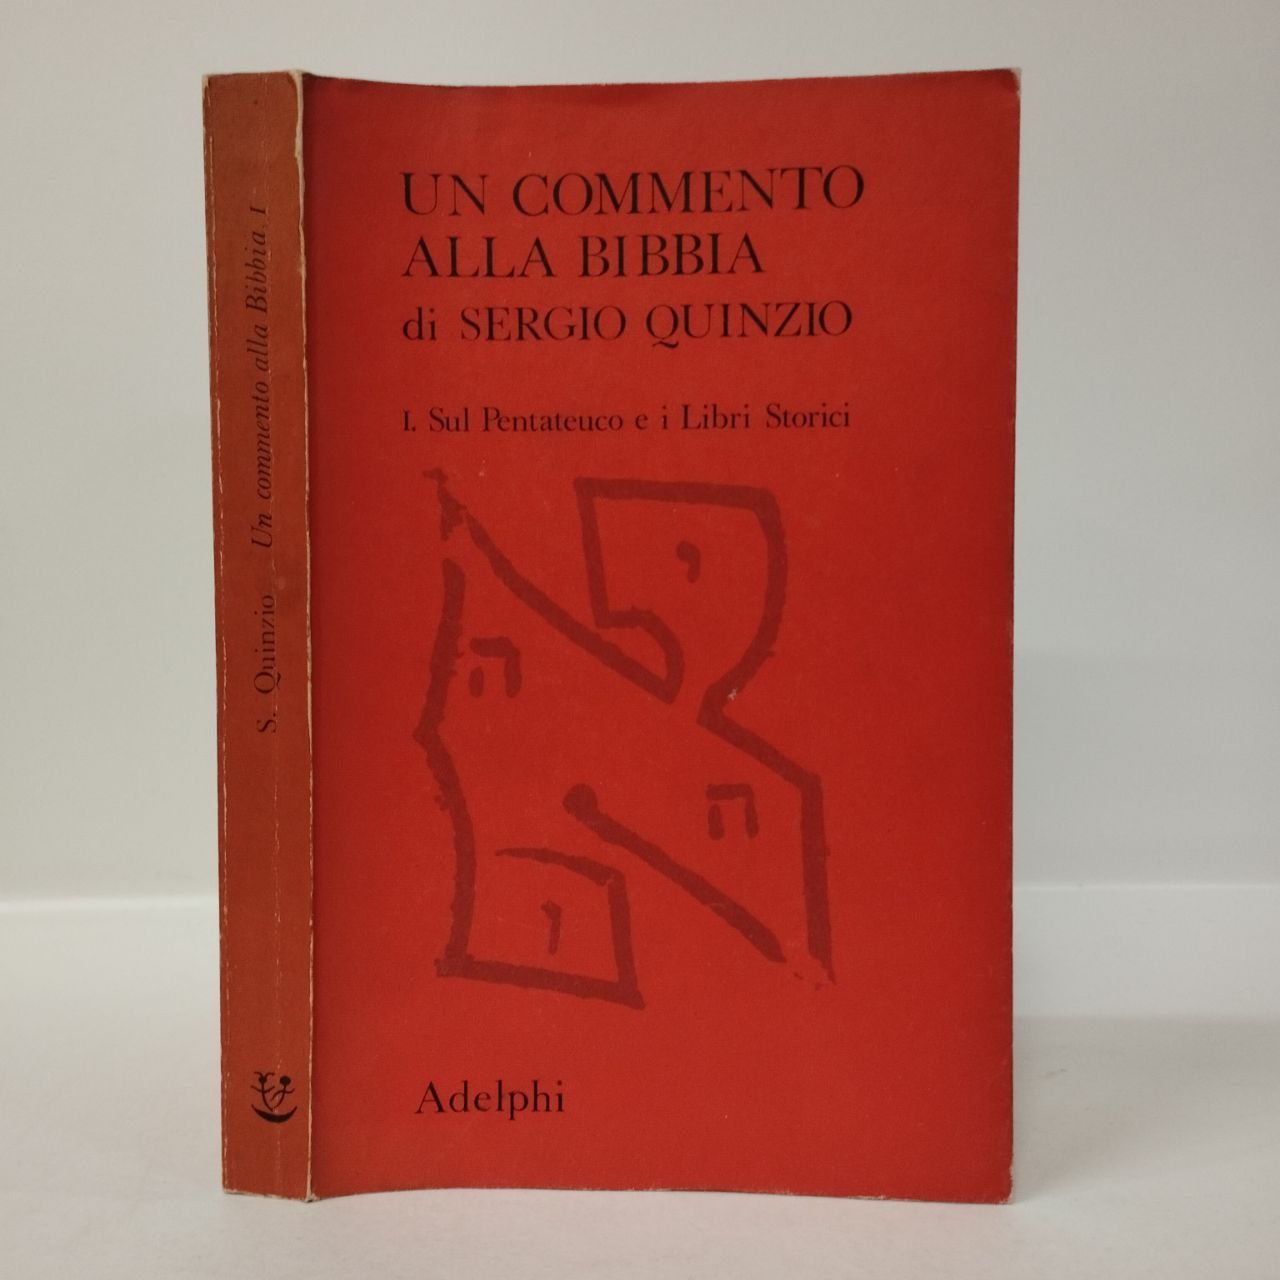 Un commento alla bibbia. I. Sul Pentateuco e i Libri Storici. Quinzio  Sergio. Adelphi, 1972. - Equilibri Libreria Torino